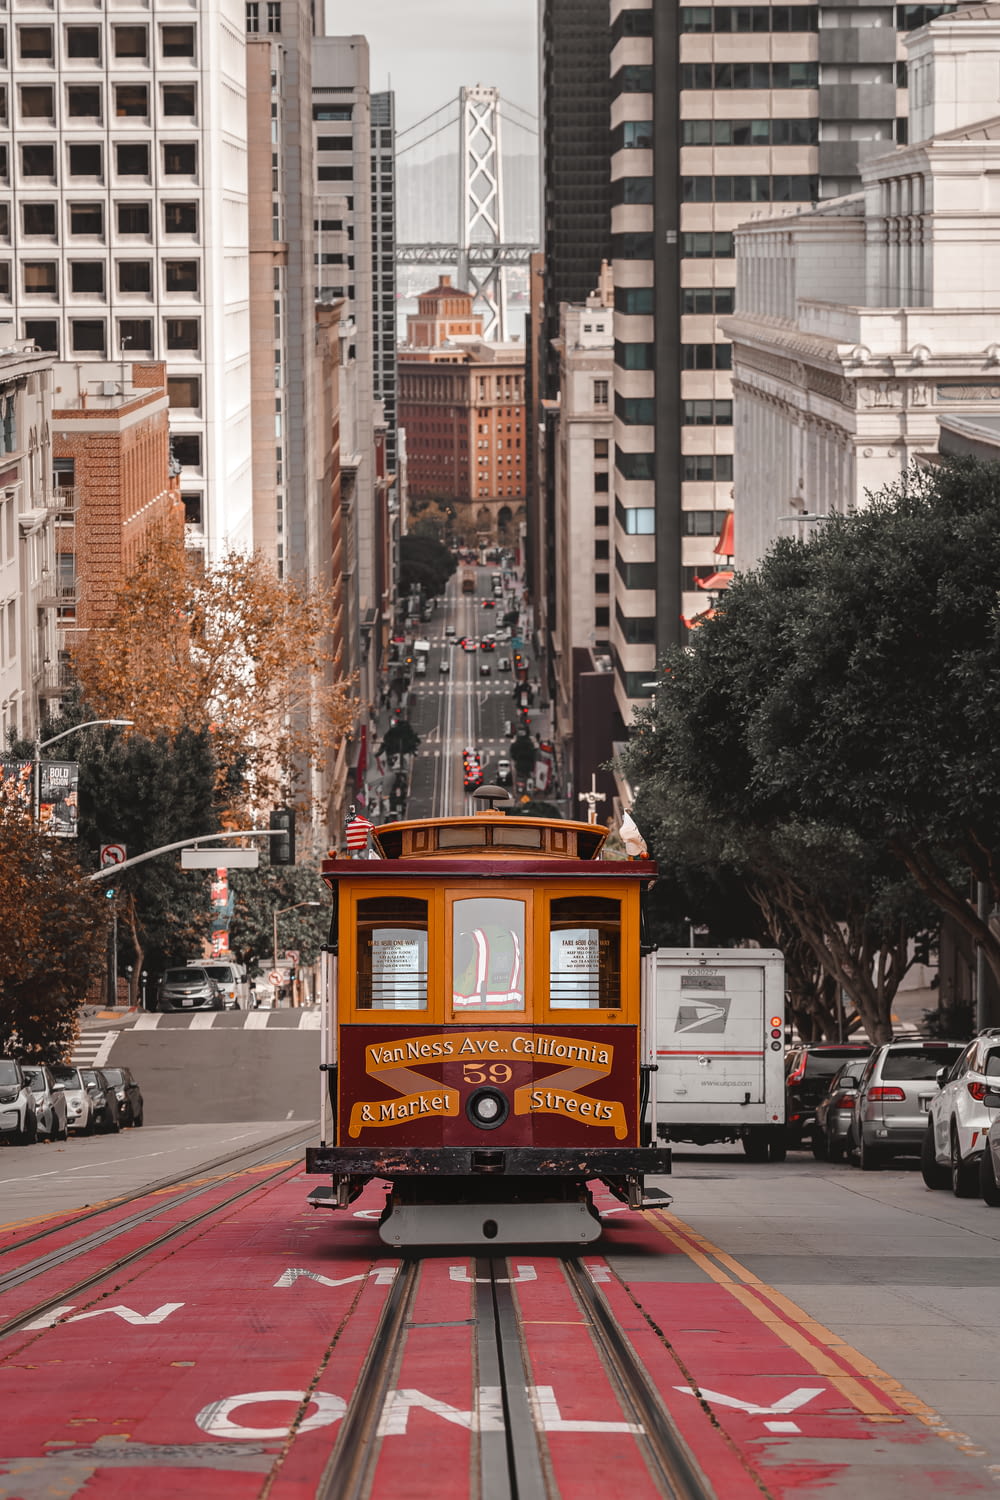 a trolley car on a street